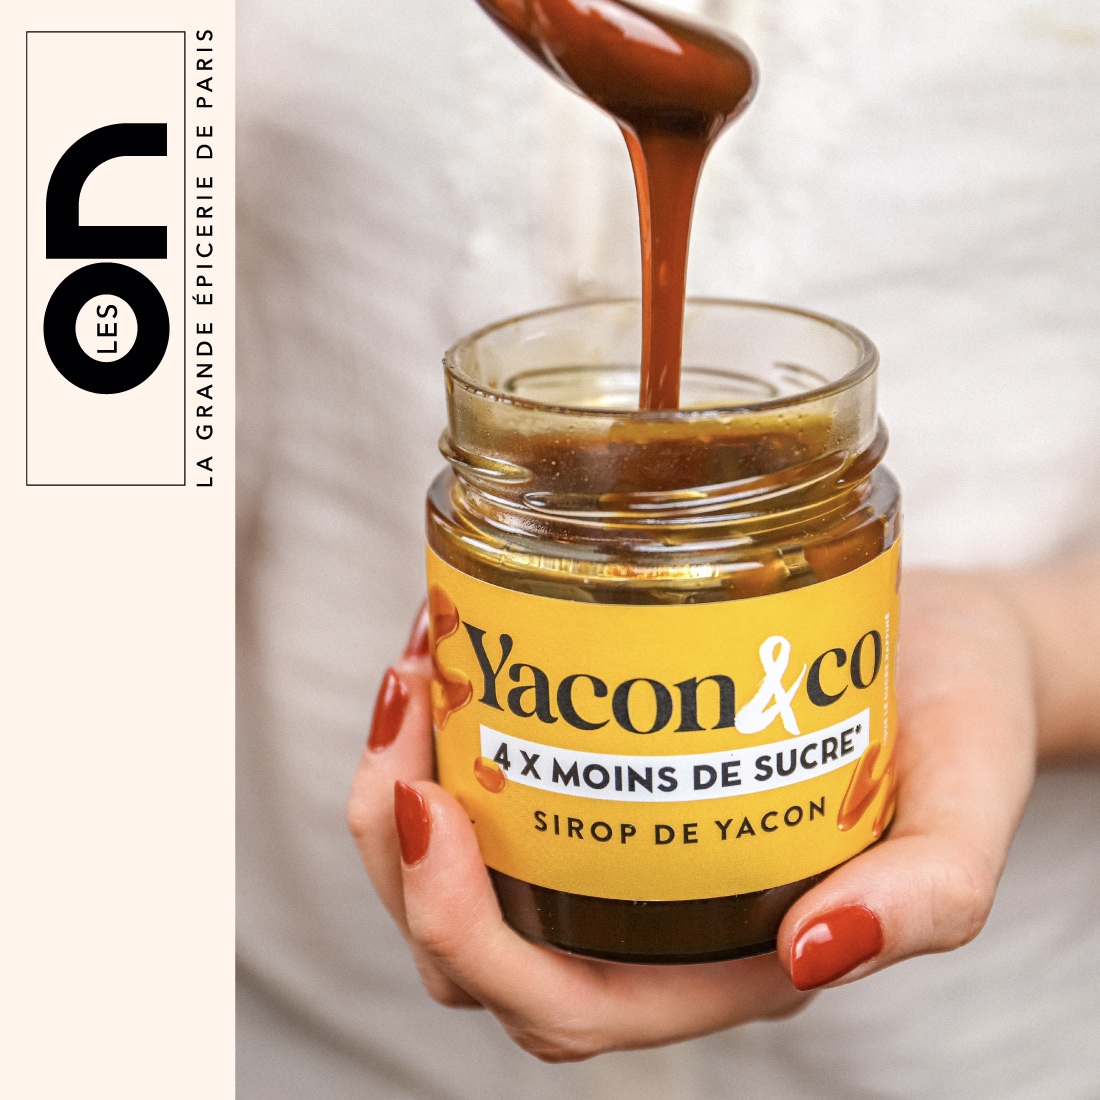 Le sirop de yacon, une alternative diététique au sucre pour vos pâtisseries  - Metrotime